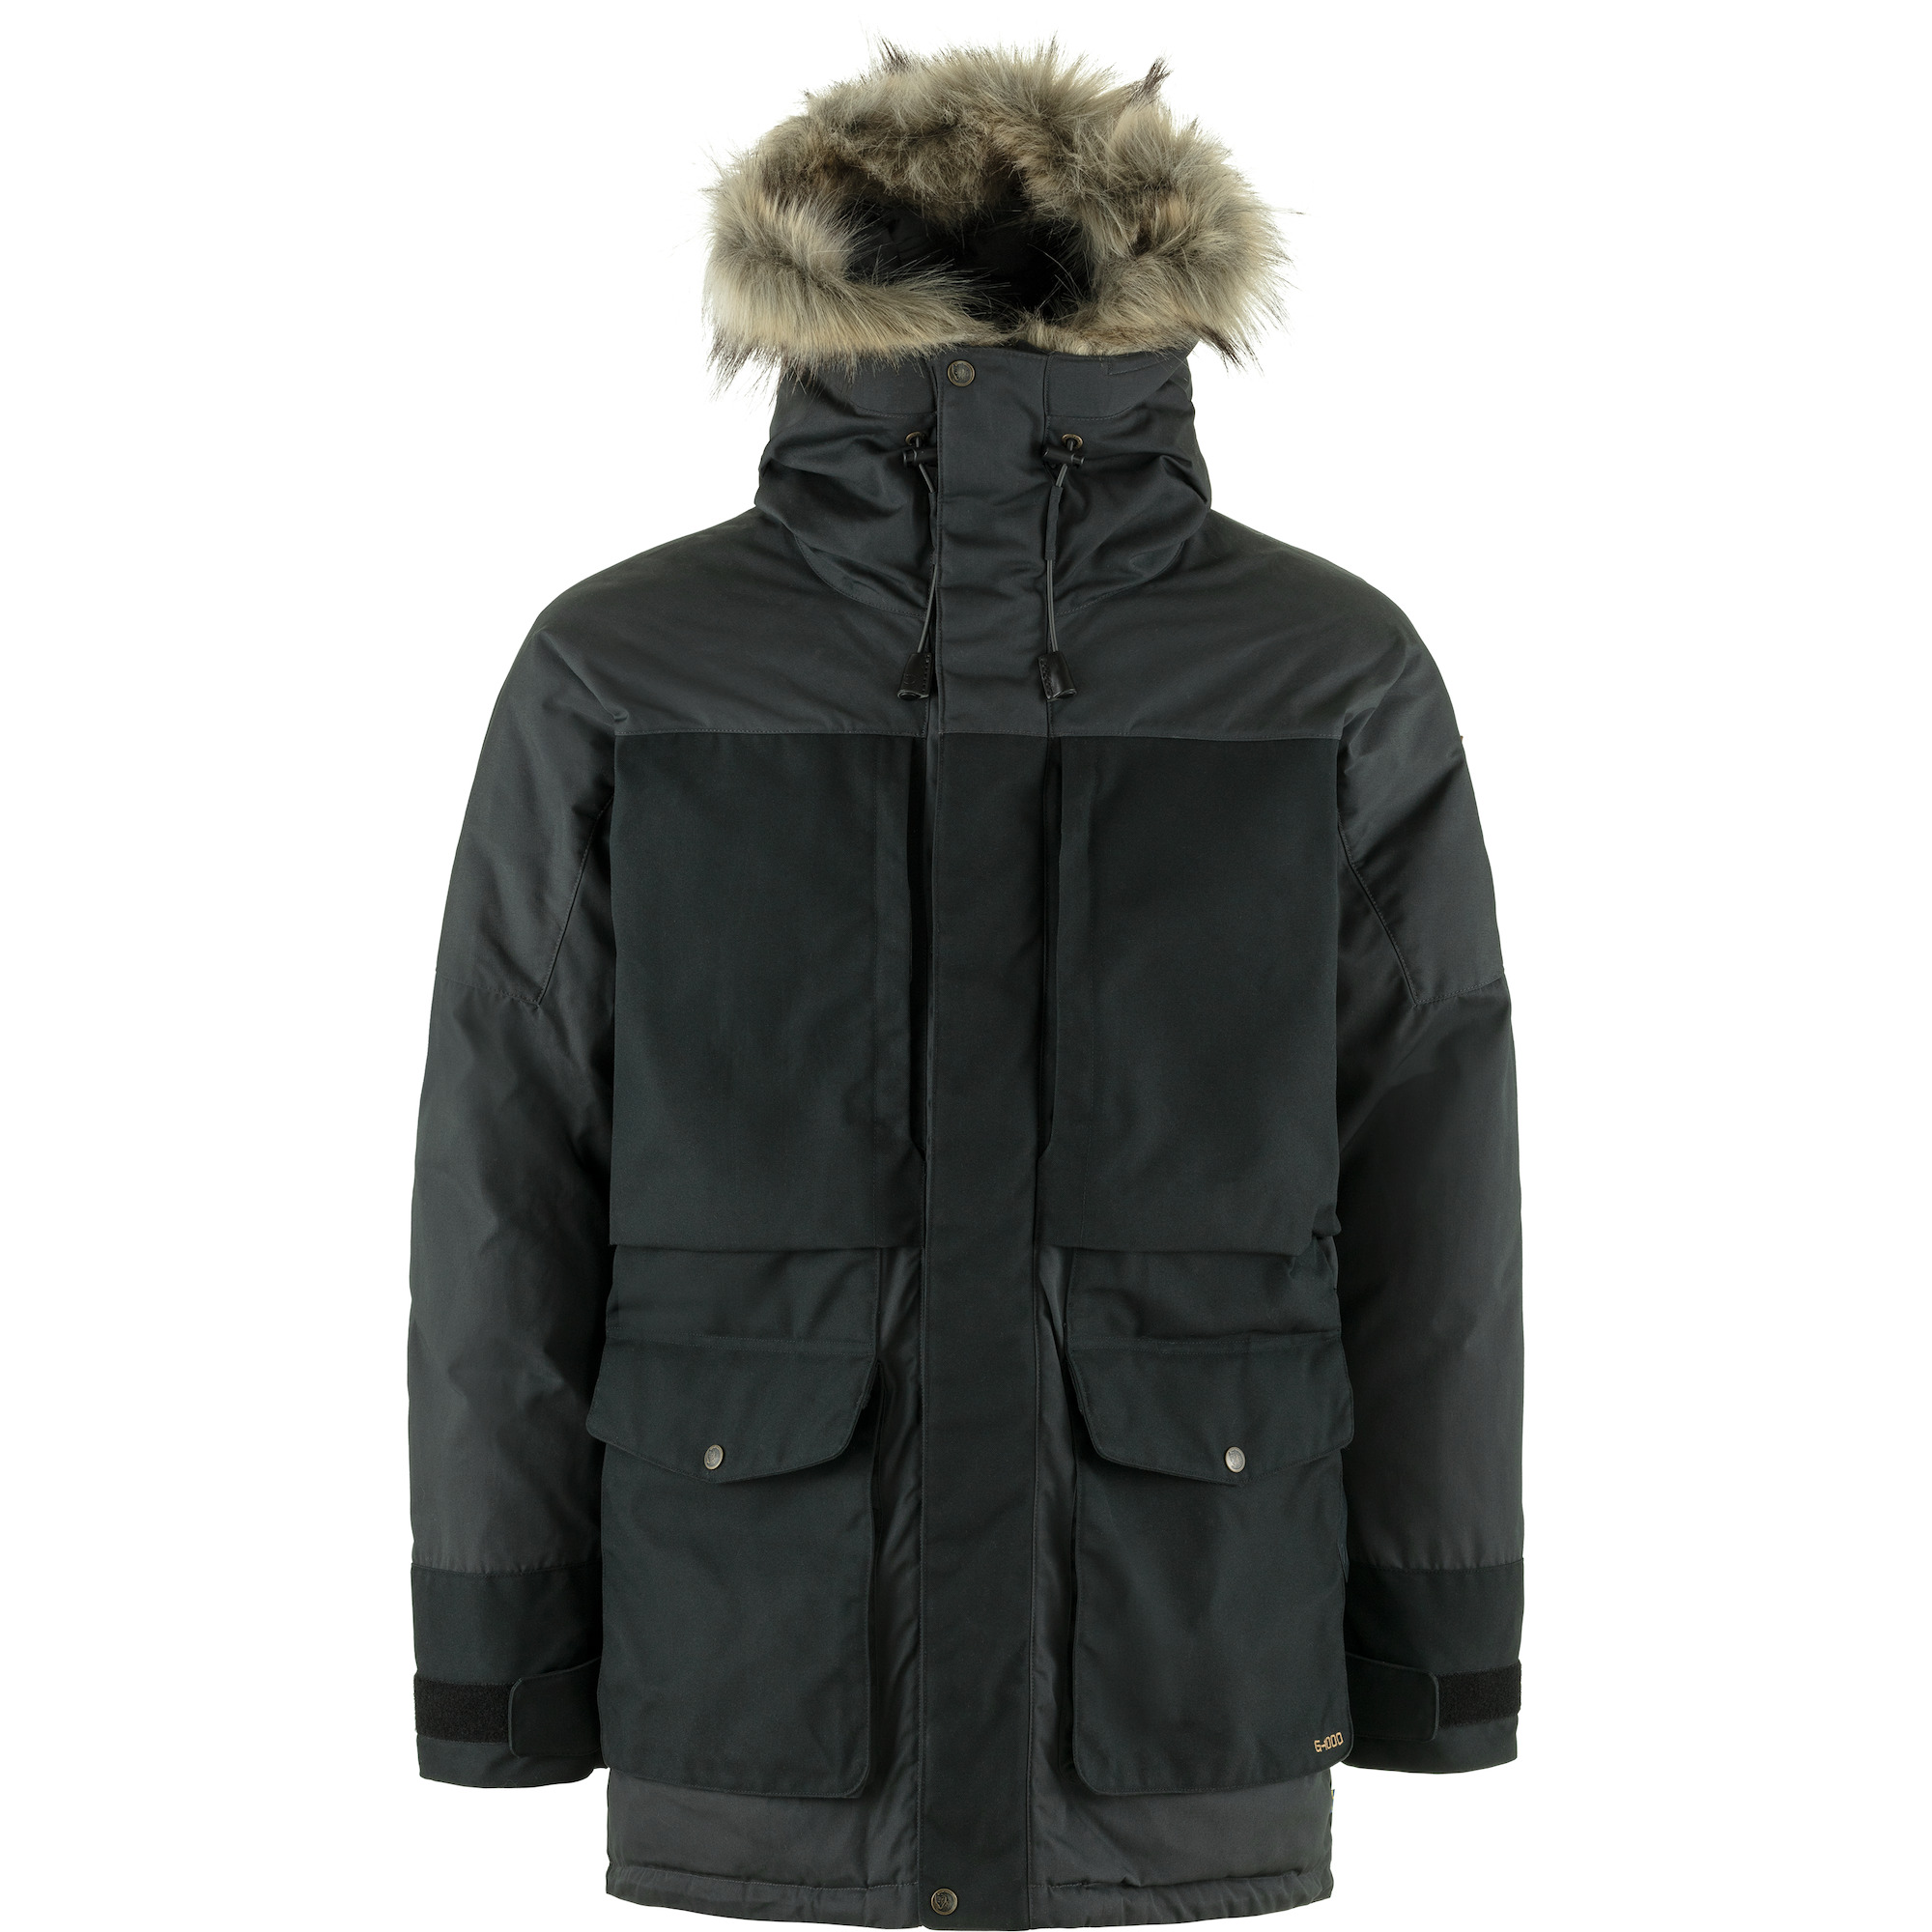 Shop & Winter Coats | Fjallraven US